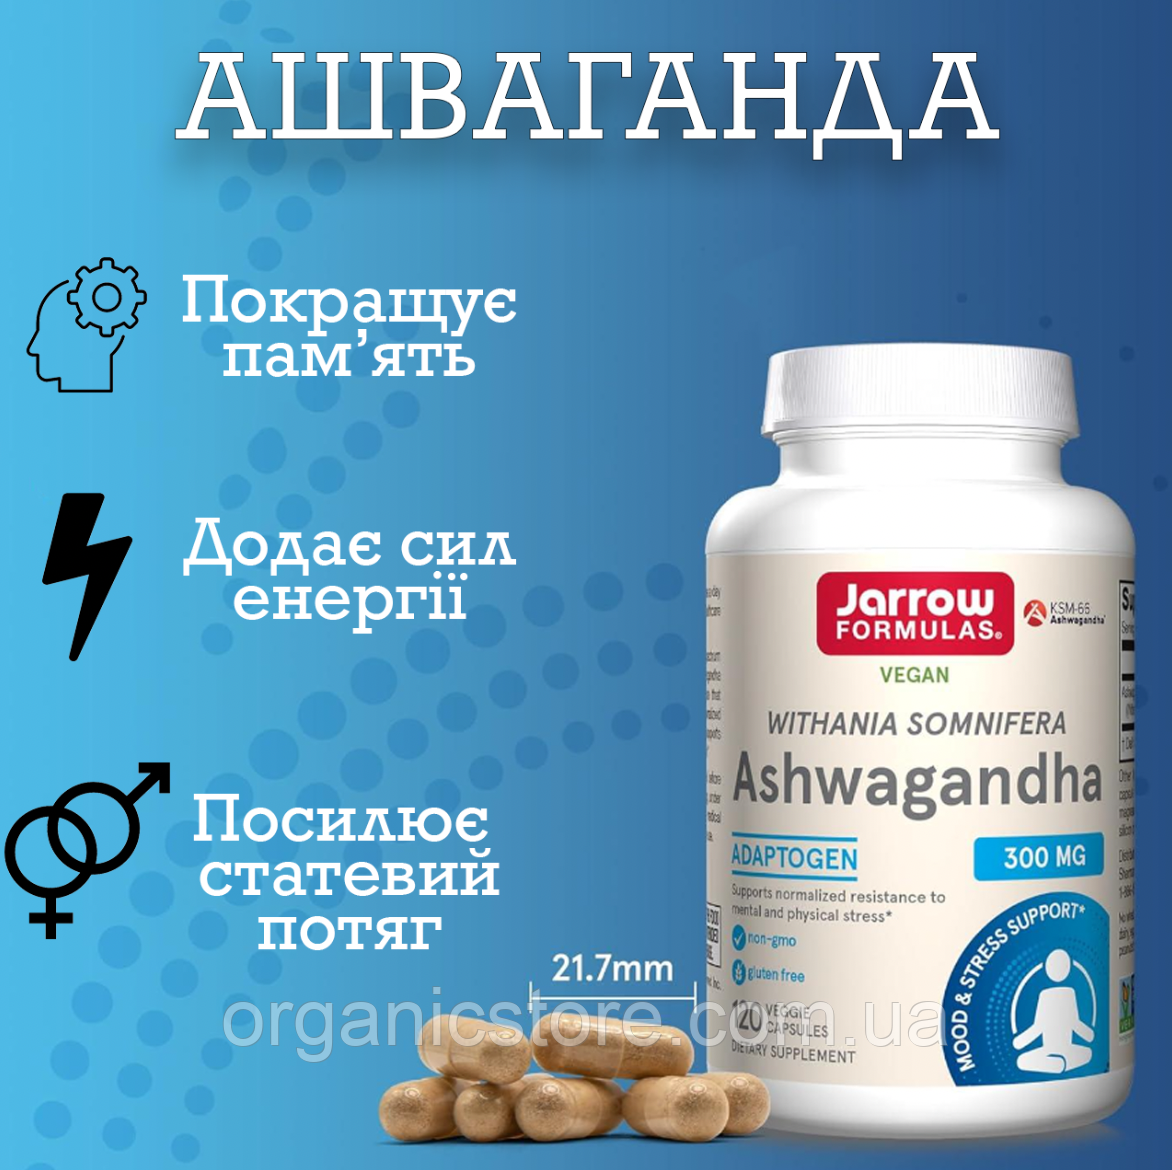 Ашваганда Jarrow Formula 300 мг, 120 капсул